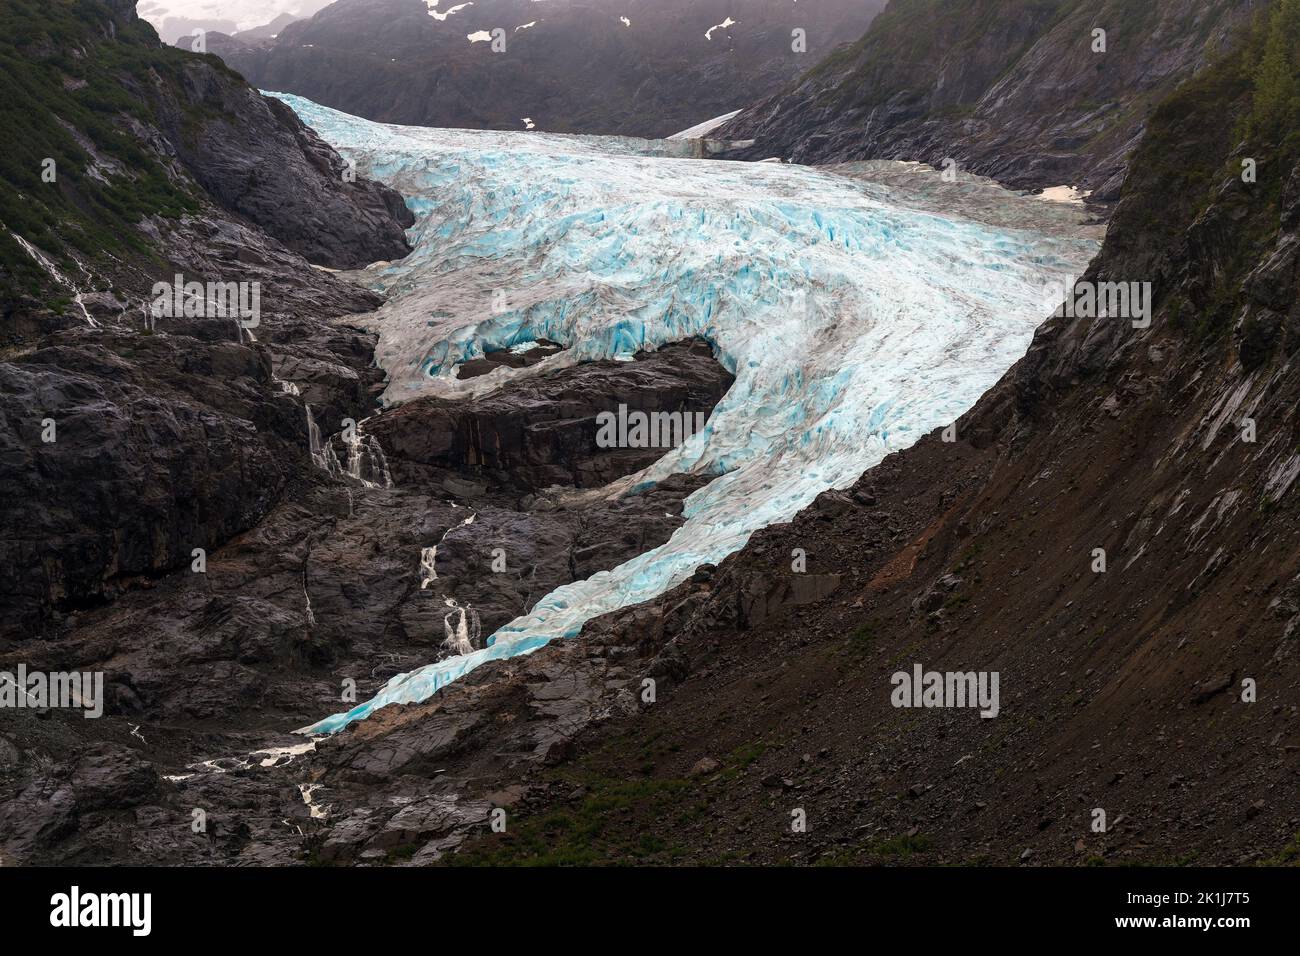 Recul du glacier d'ours en raison du changement climatique, Stewart, Colombie-Britannique, Canada. Banque D'Images